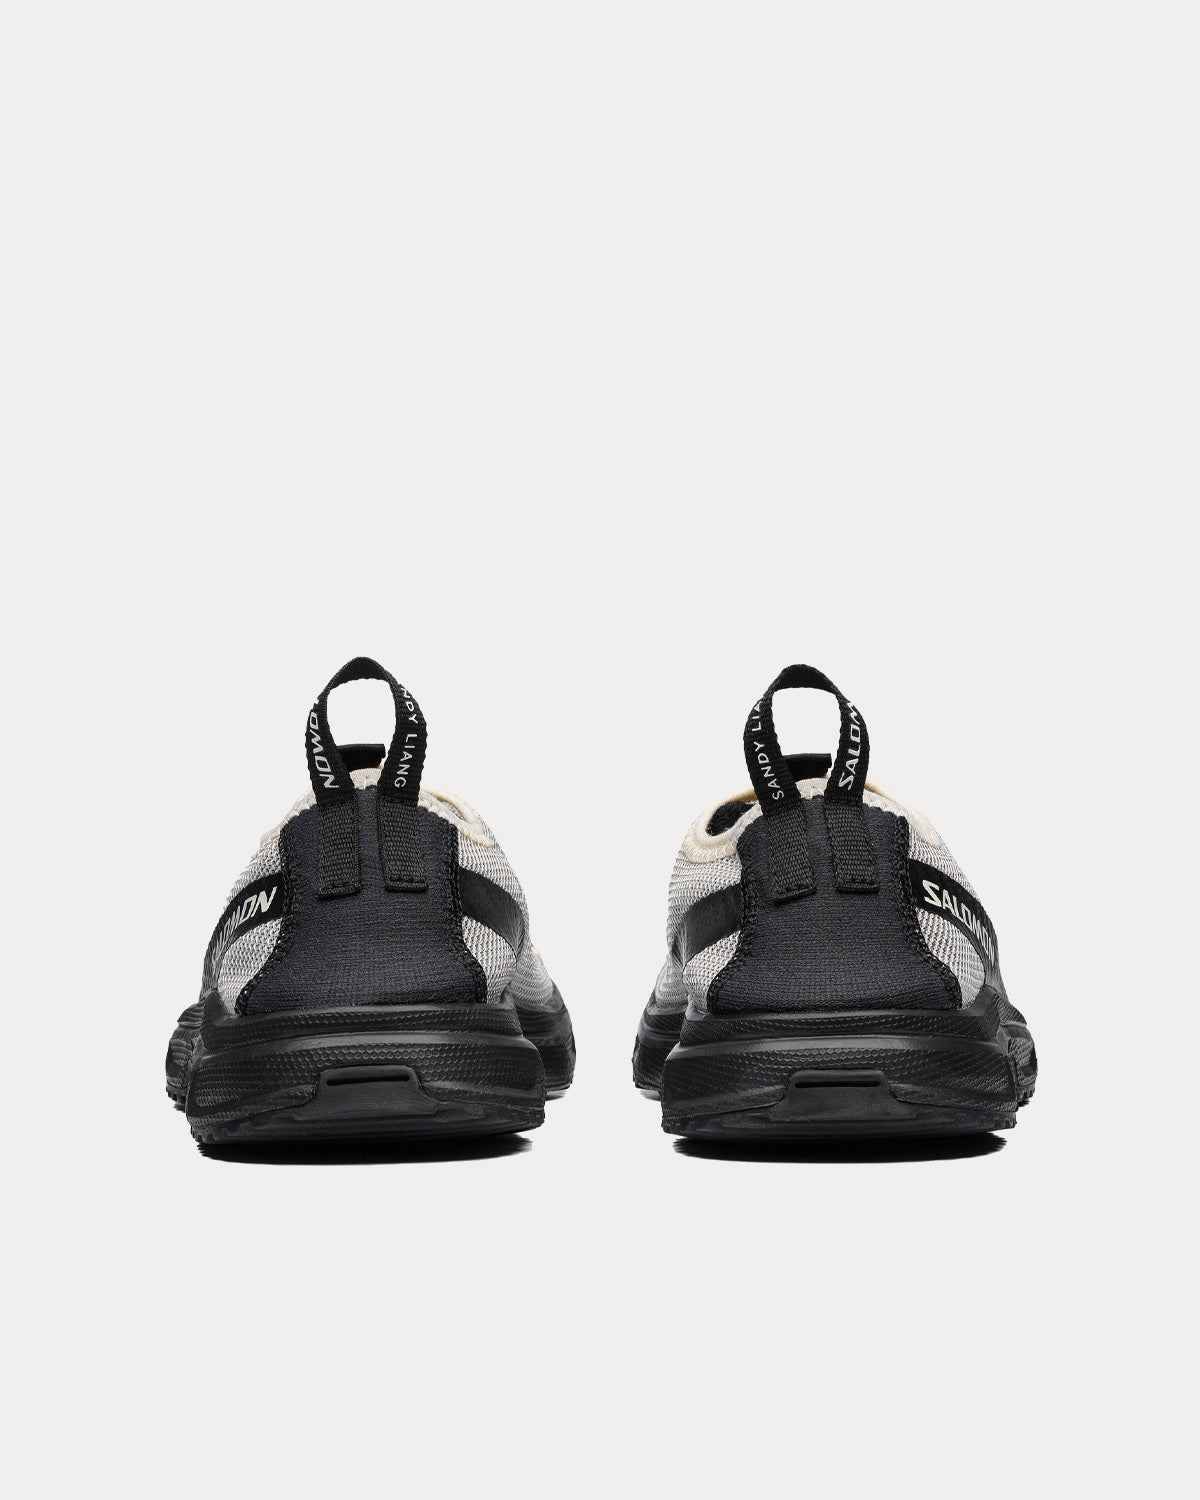 Salomon x Sandy Liang - RX Moc 3.0 Black / White Slip On Sneakers